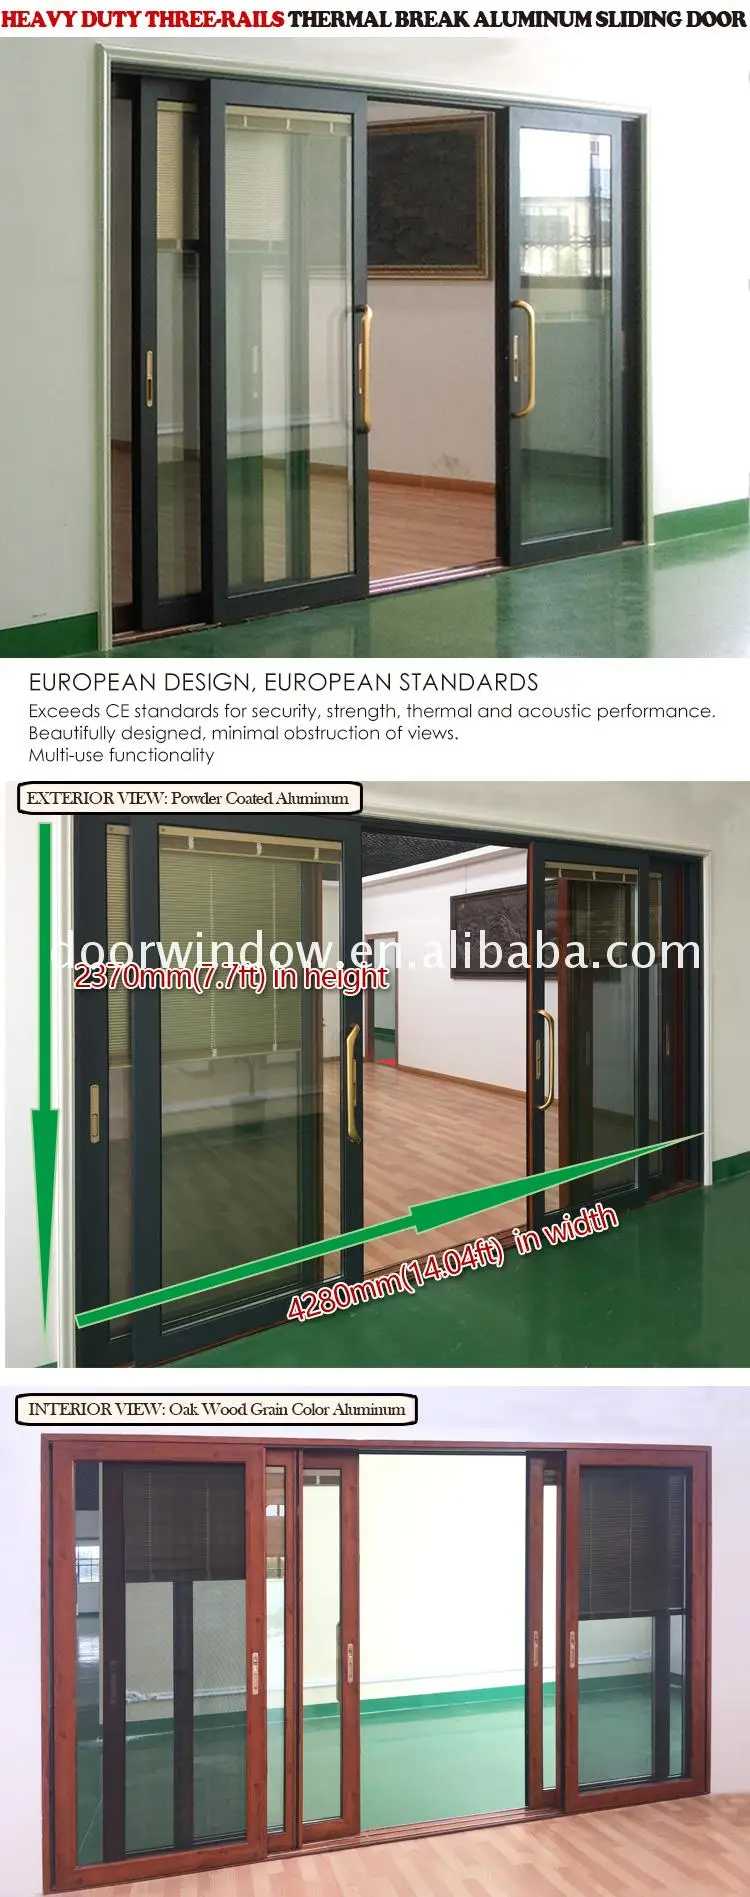 Doorwin sliding door Thermal break double safety glazing aluminum sliding doors triple glass aluminum lift sliding door